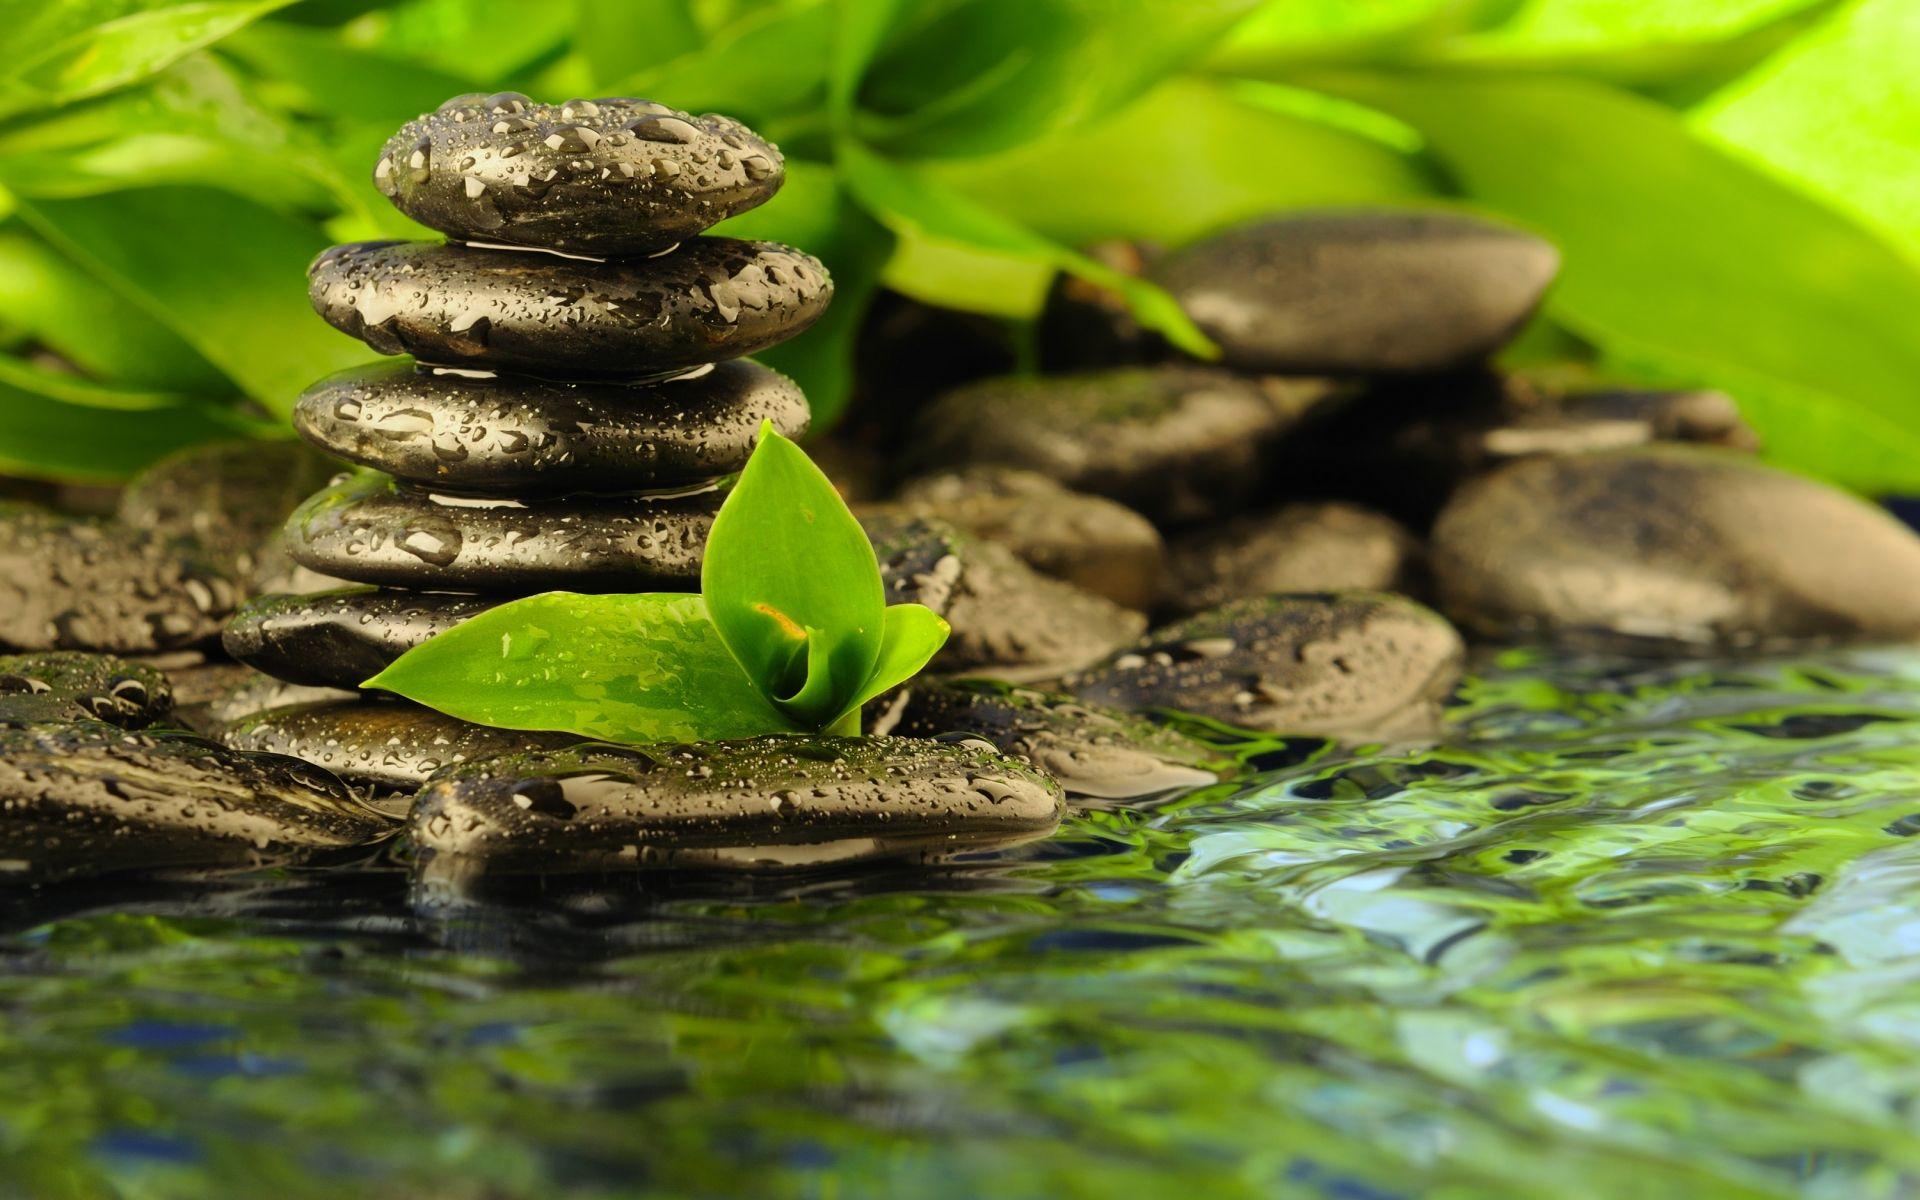 116459 Peaceful Zen Background Images Stock Photos  Vectors   Shutterstock